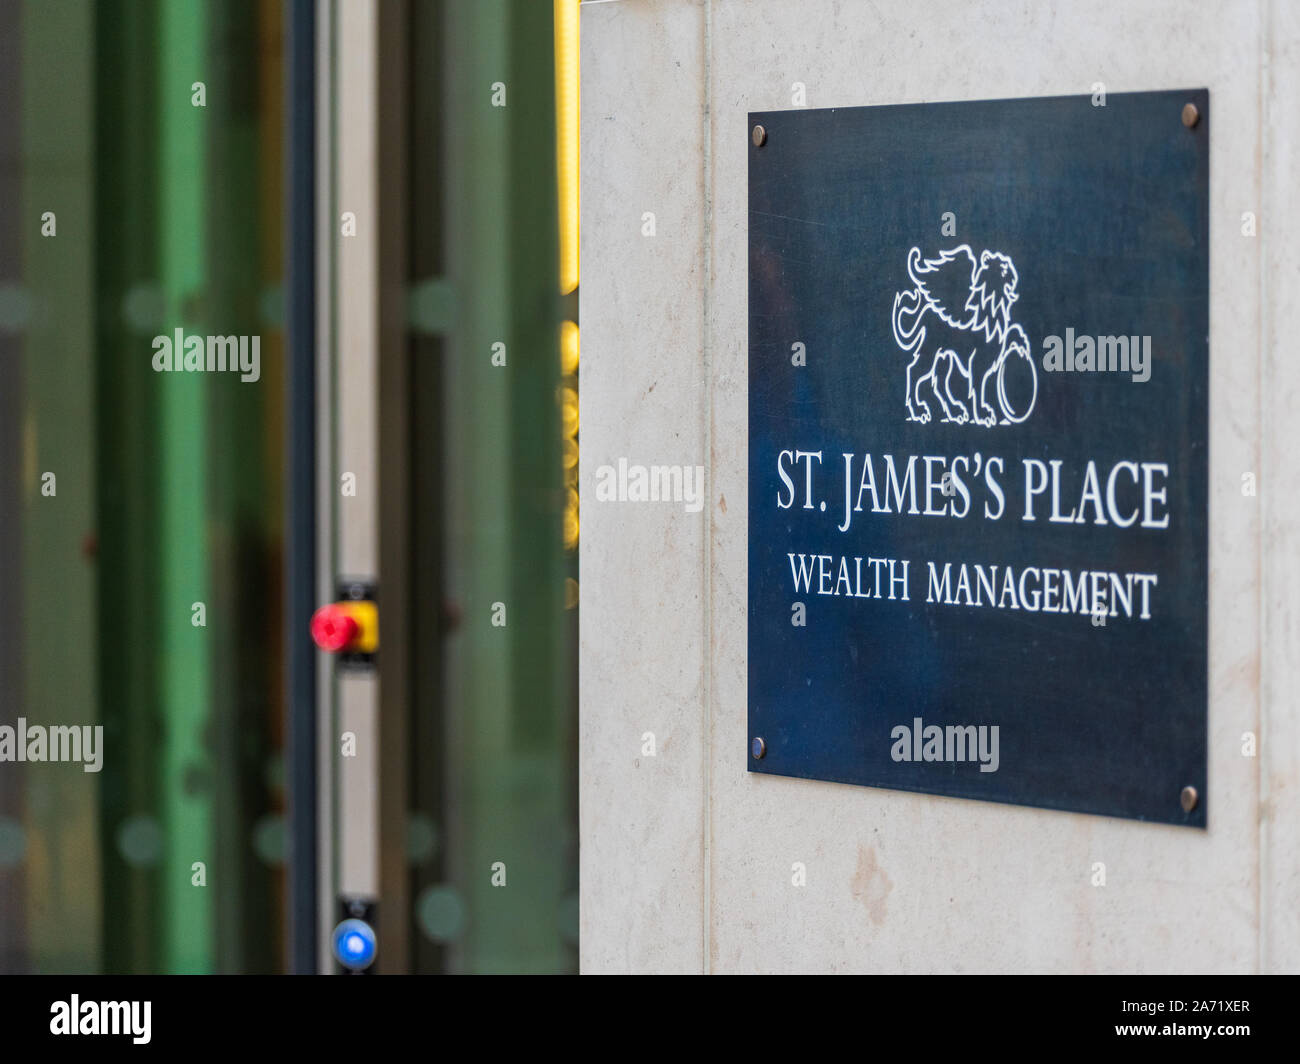 St James's Place London - Wealth Management Company nel quartiere finanziario della City of London, al 30 di Lombard Street, Londra. Foto Stock